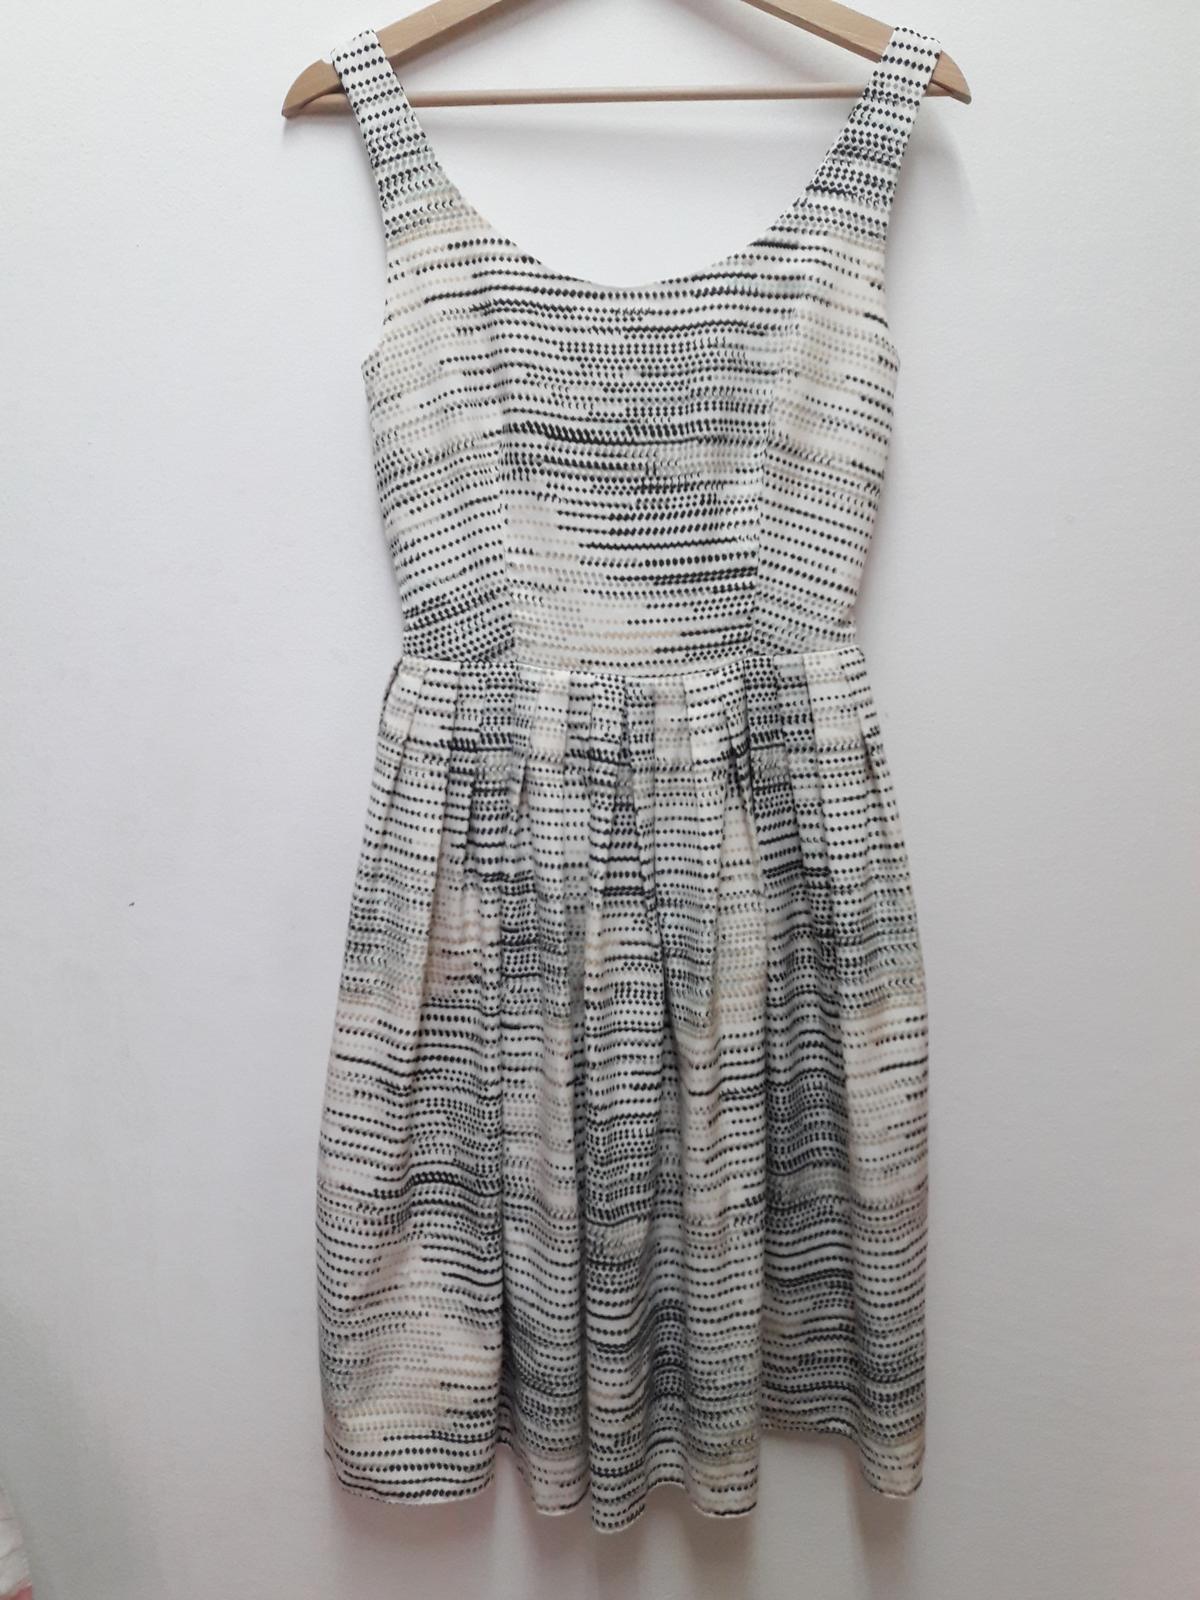 letní šaty TU - Obrázek č. 3